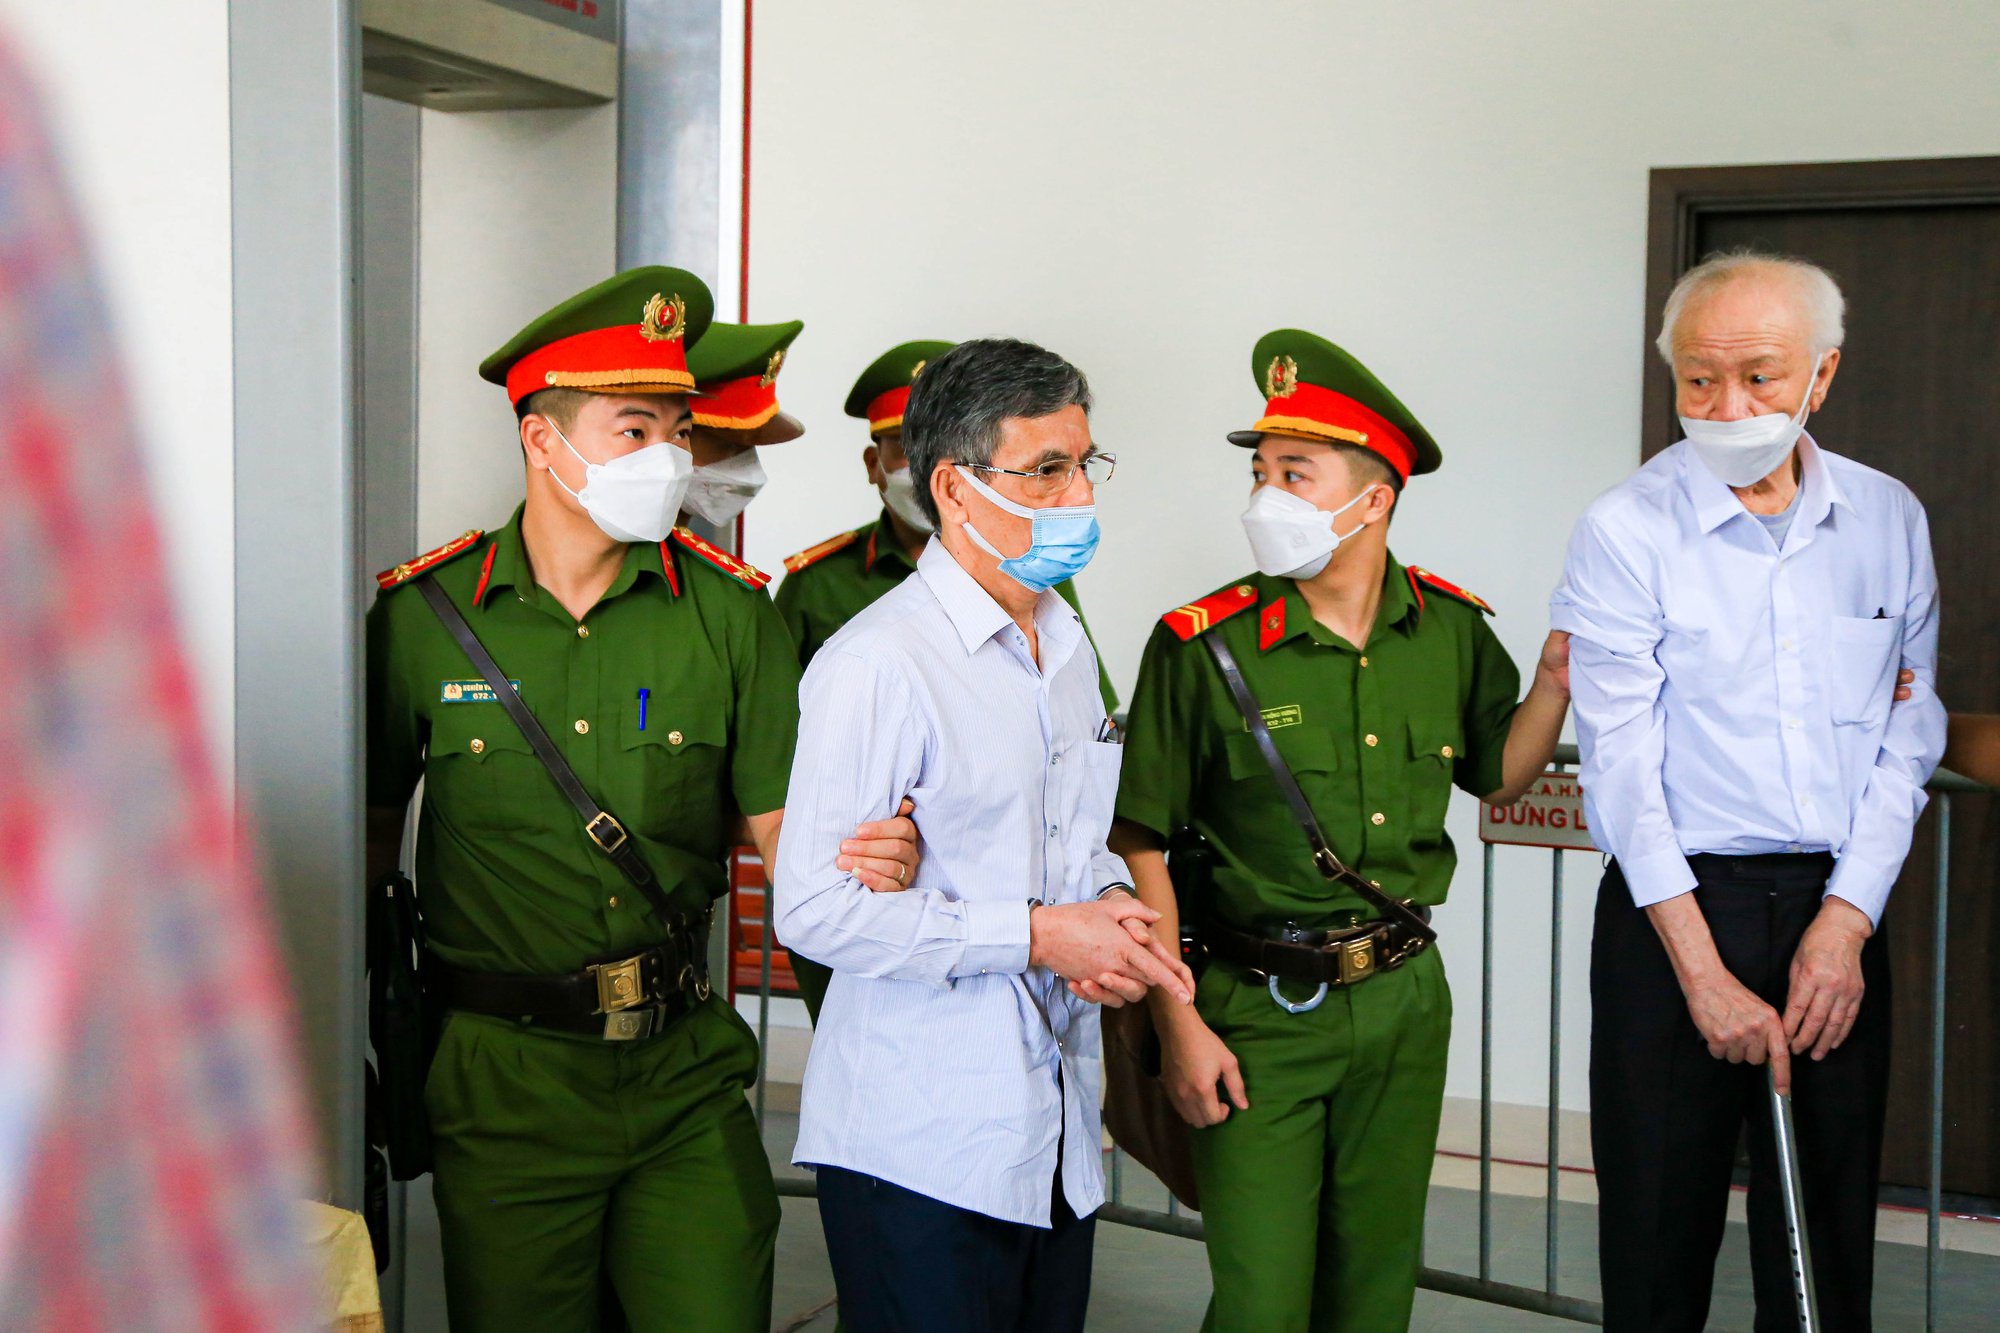 Cựu bí thư Bình Dương Trần Văn Nam cùng các đồng phạm bị dẫn giải tới tòa - Ảnh 11.